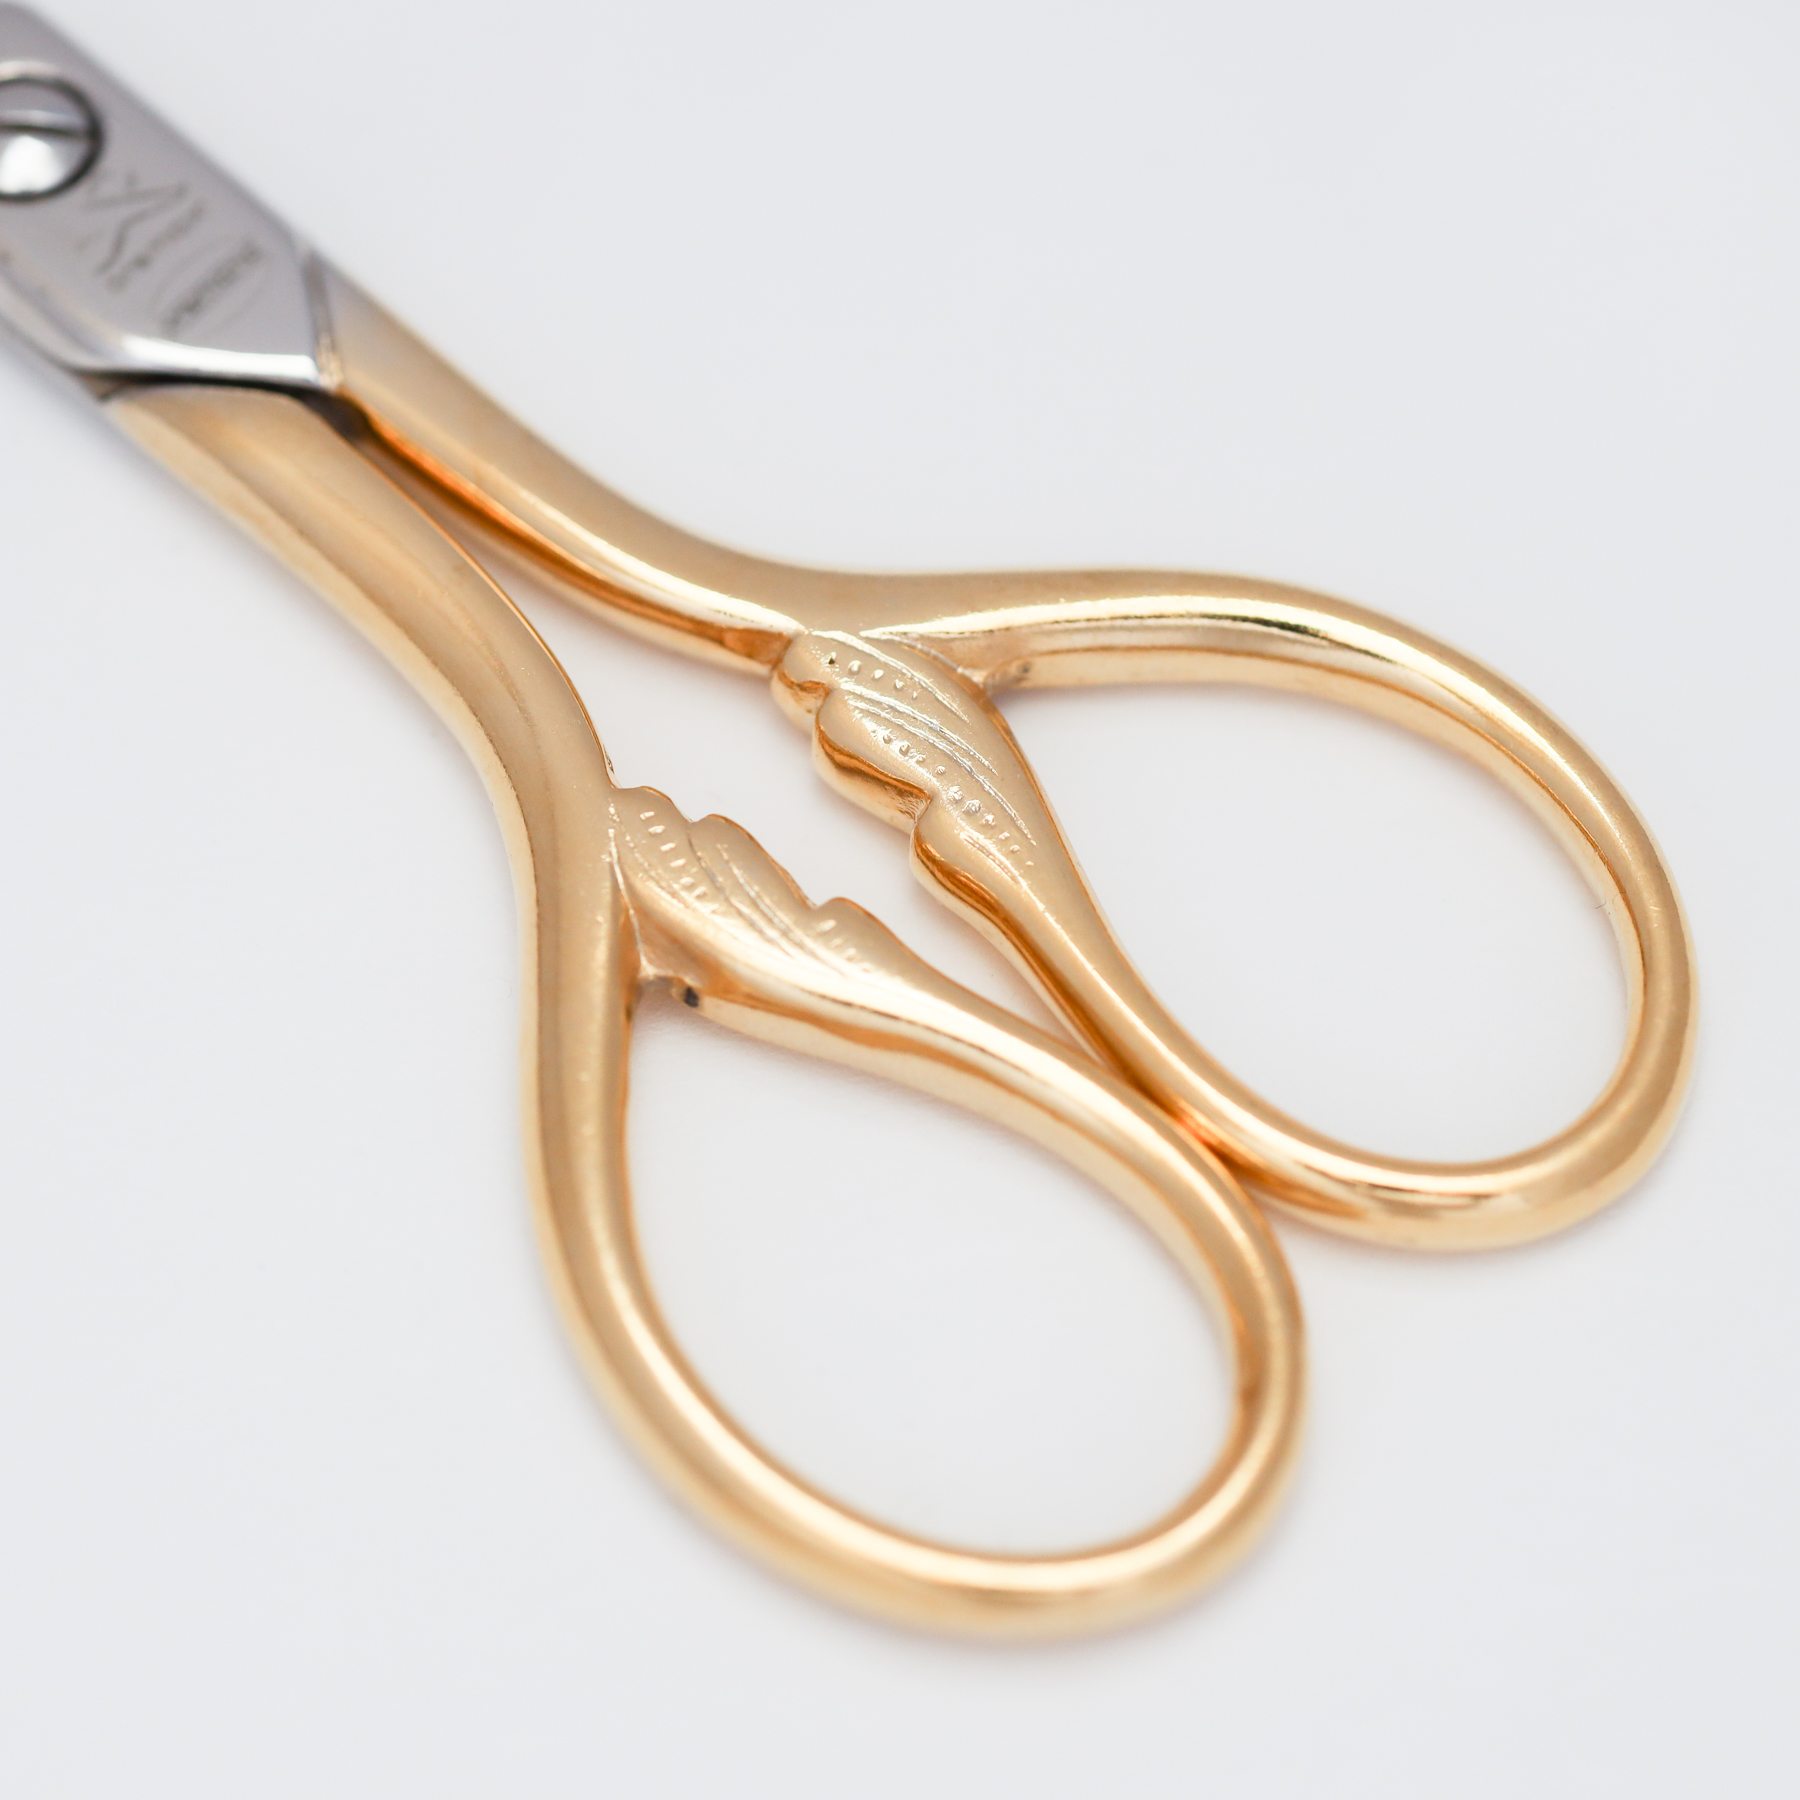 Sewing Scissors - Leaf